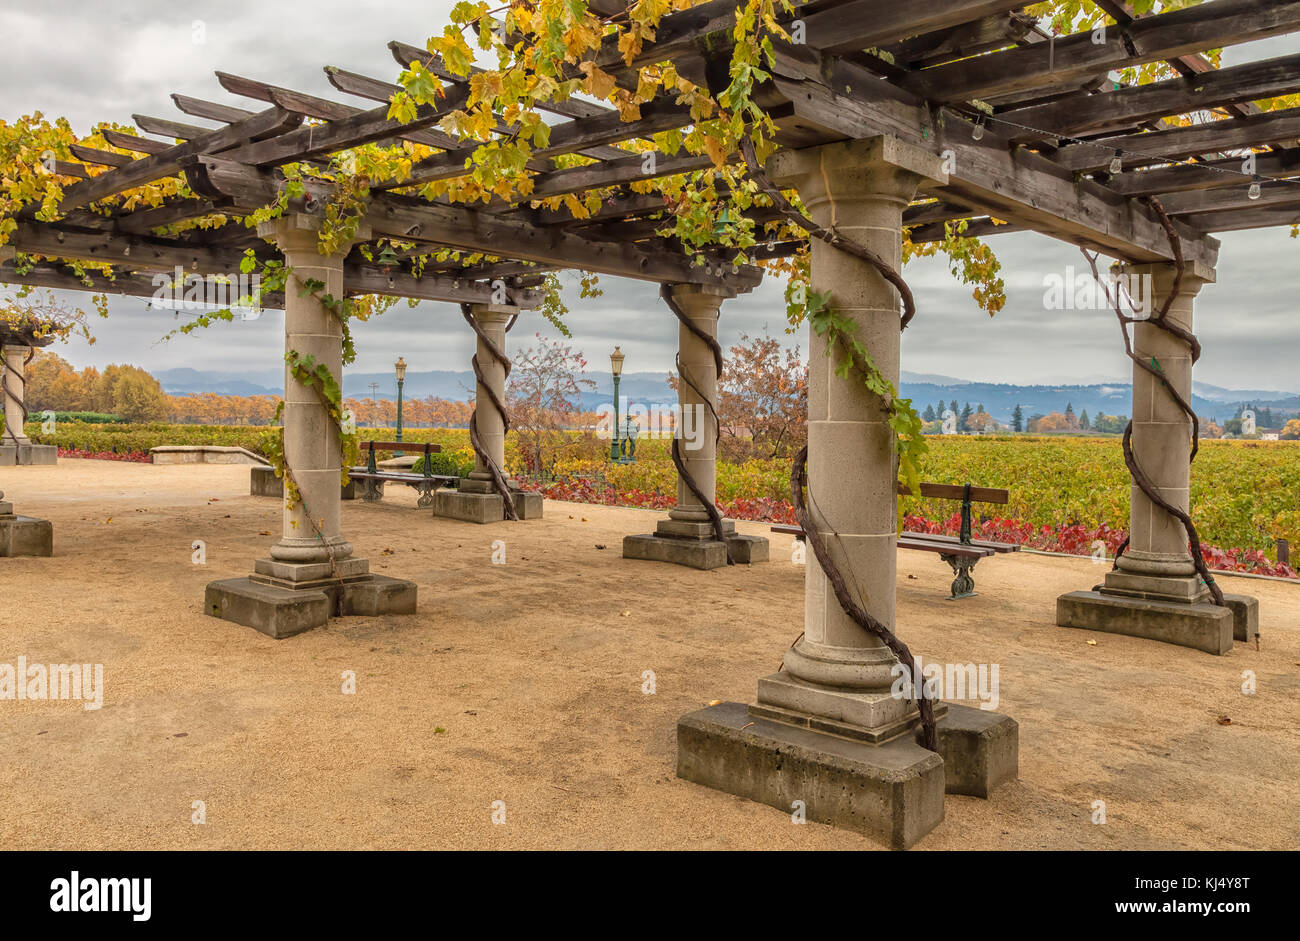 Struktur der Pergola mit Trauben Pflanzen dekoriert, und die Weinreben im  Hintergrund, Napa Valley Weinberg, California, United States  Stockfotografie - Alamy